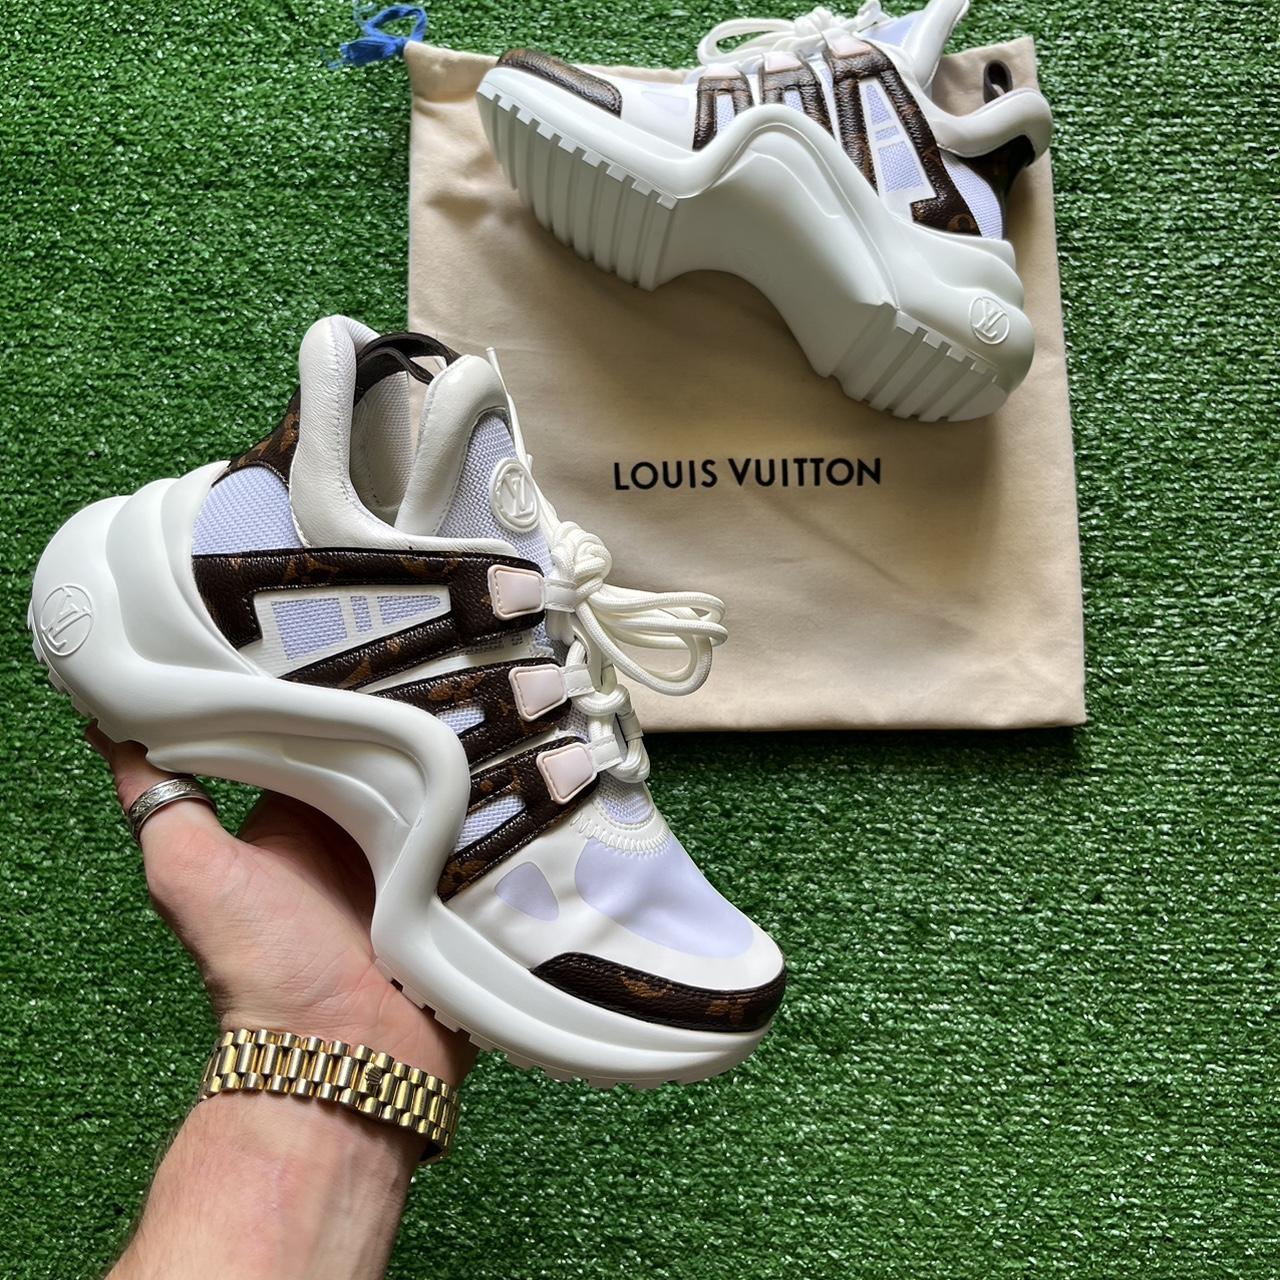 Louis Vuitton, Shoes, Louis Vuitton Archlight Sneaker